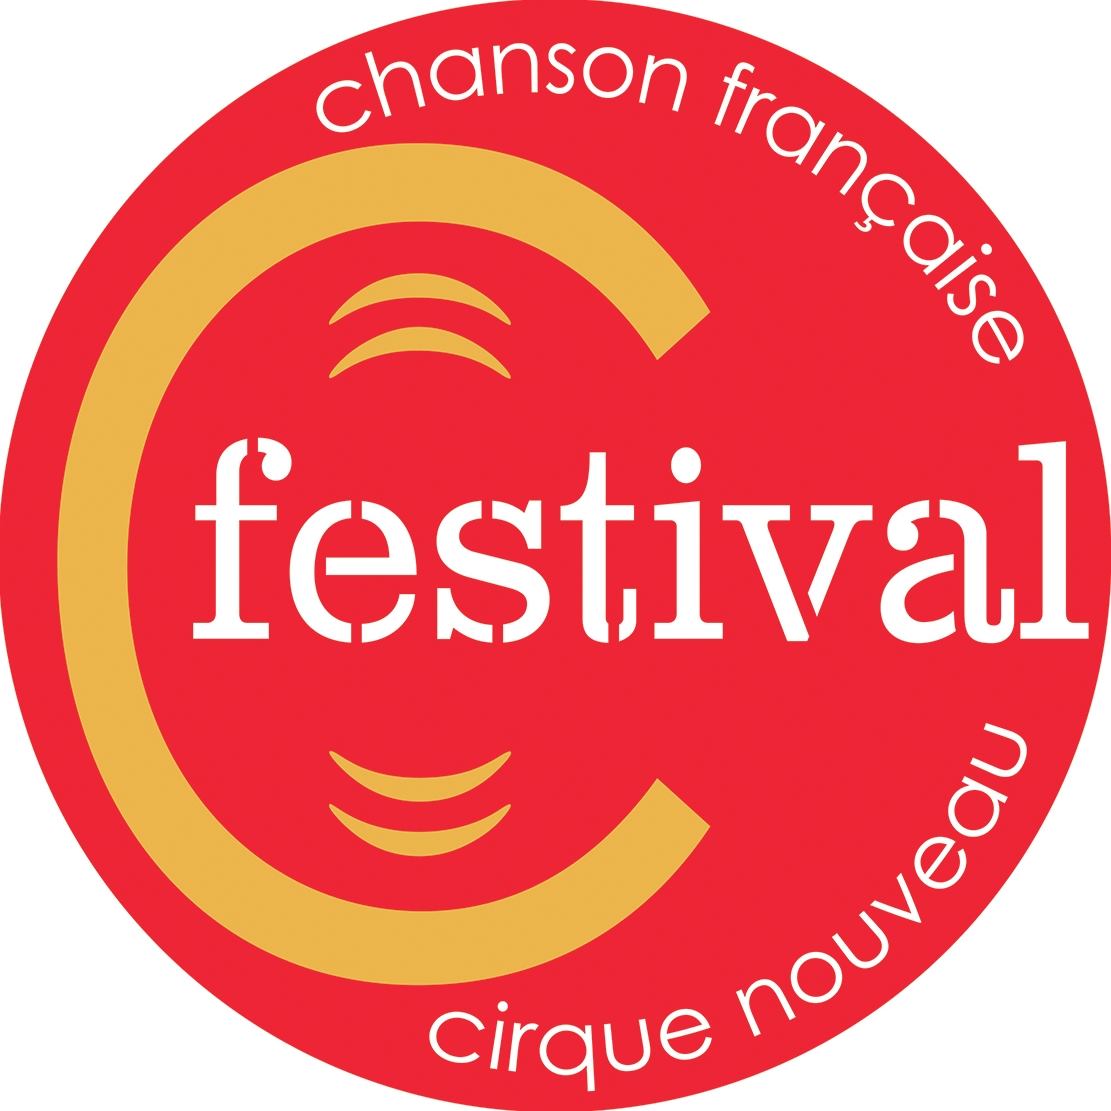 Festival C - Chanson française et Cirque nouveau